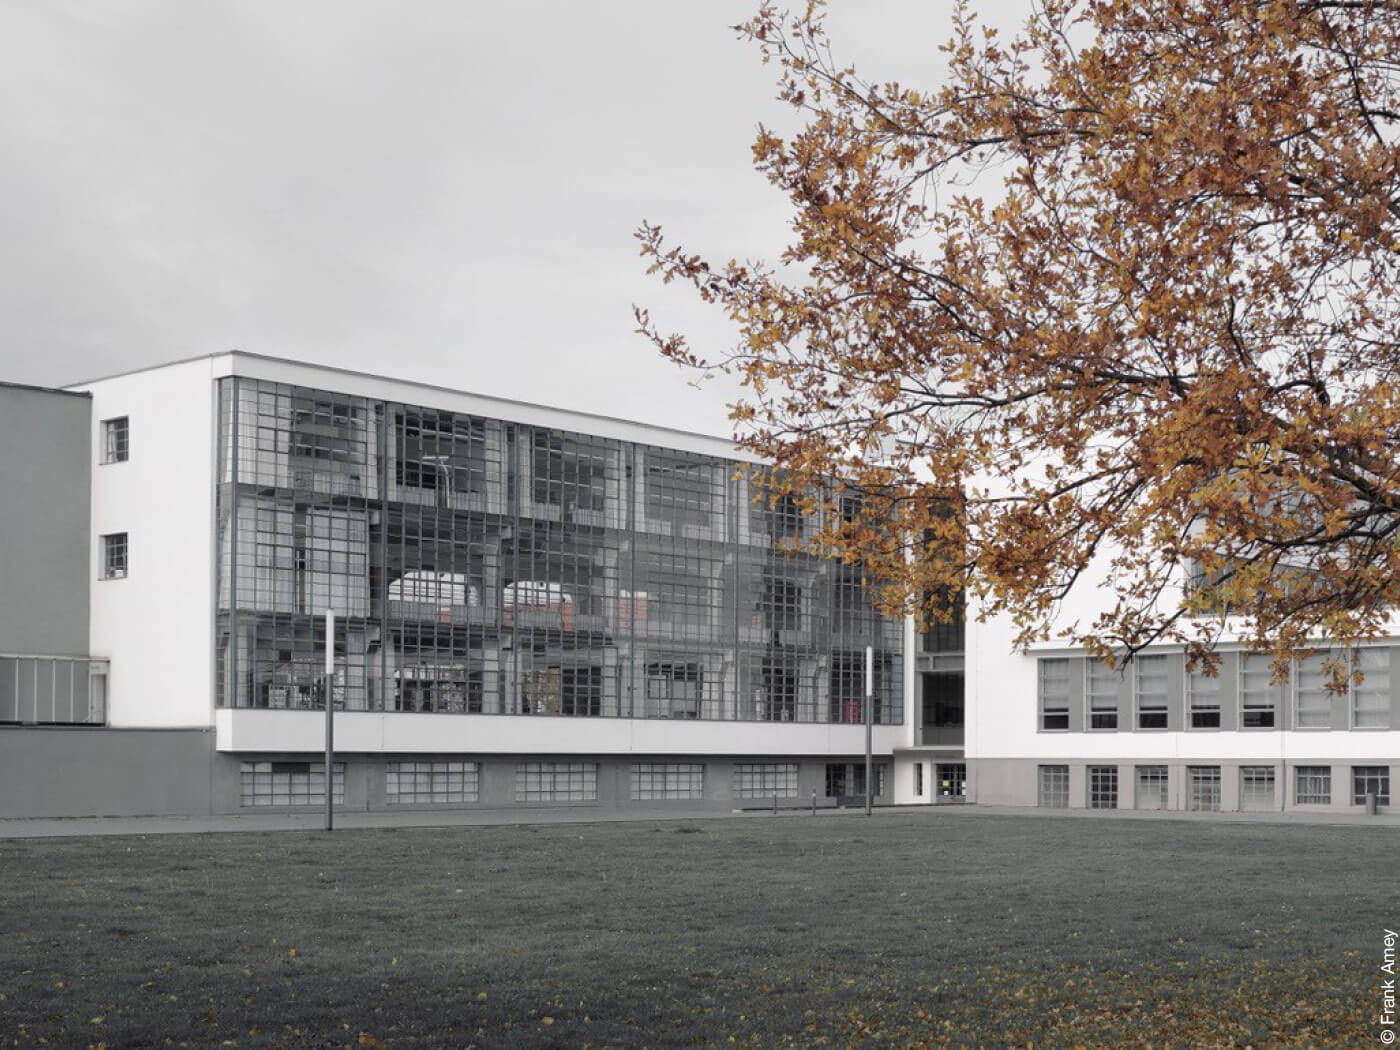 Bauhausgebäude in Dessau